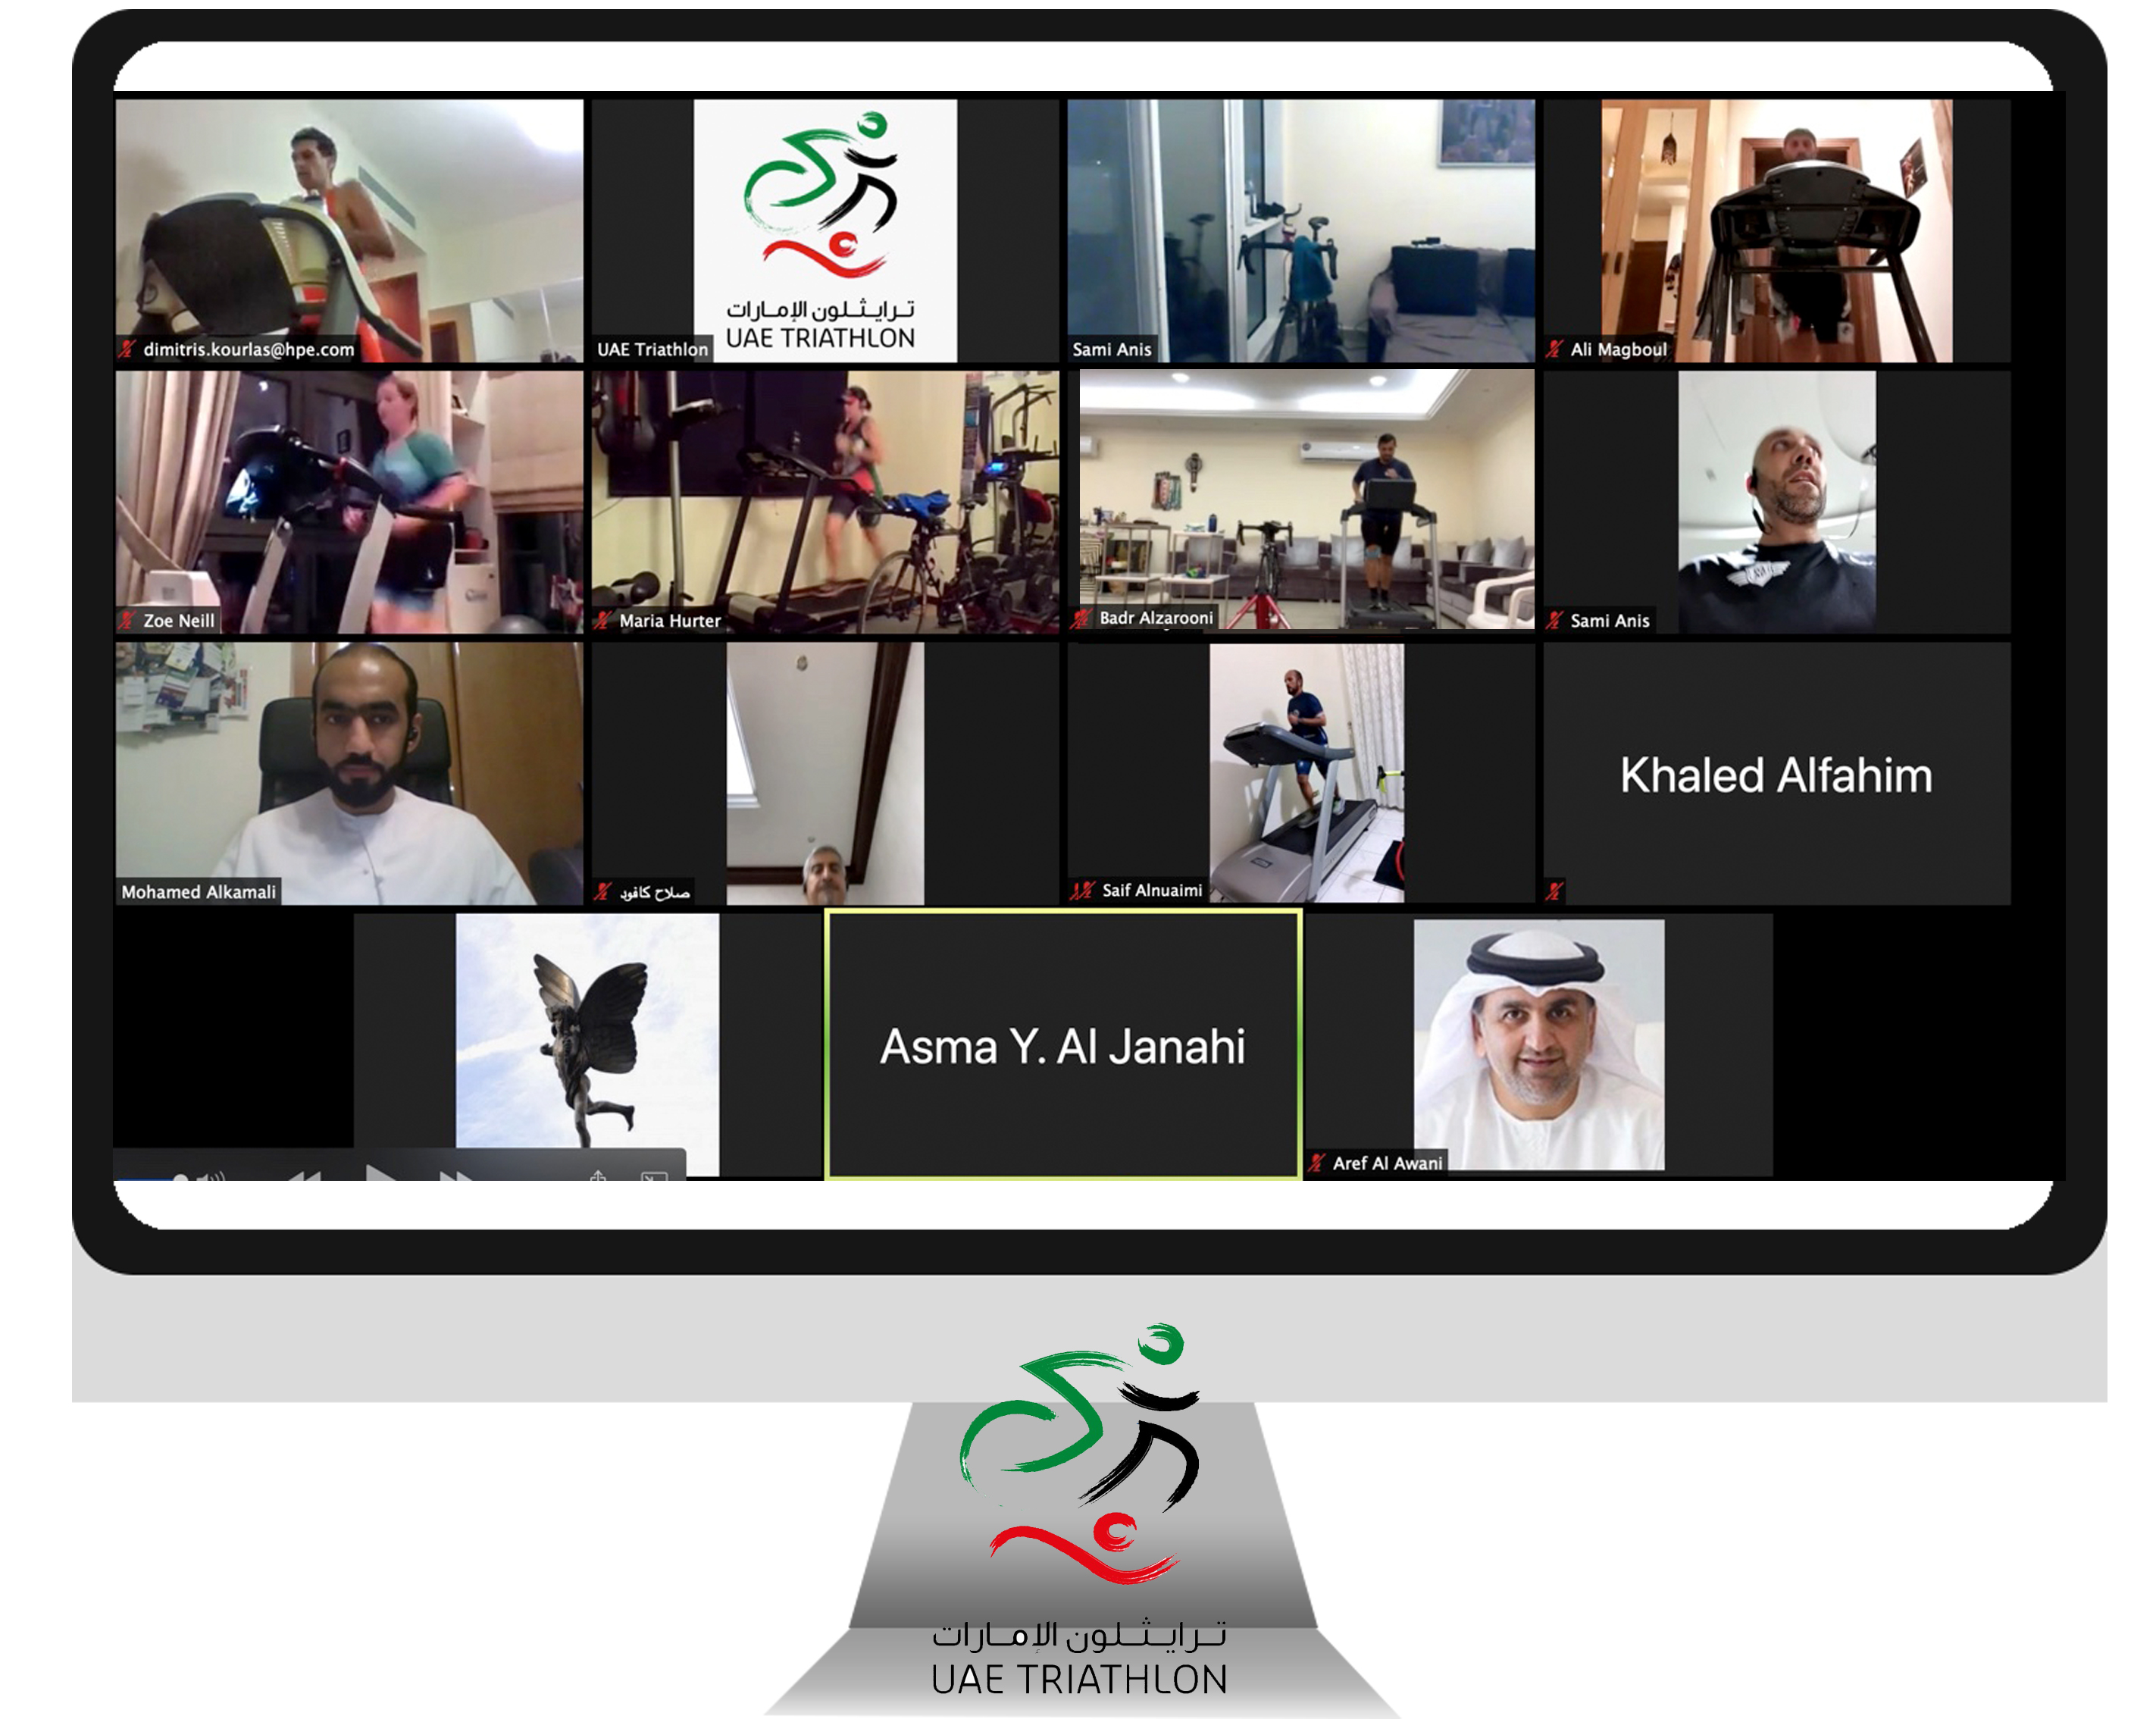 انطلاق النسخة الثانية من دواثلون الإمارات الافتراضي اليوم